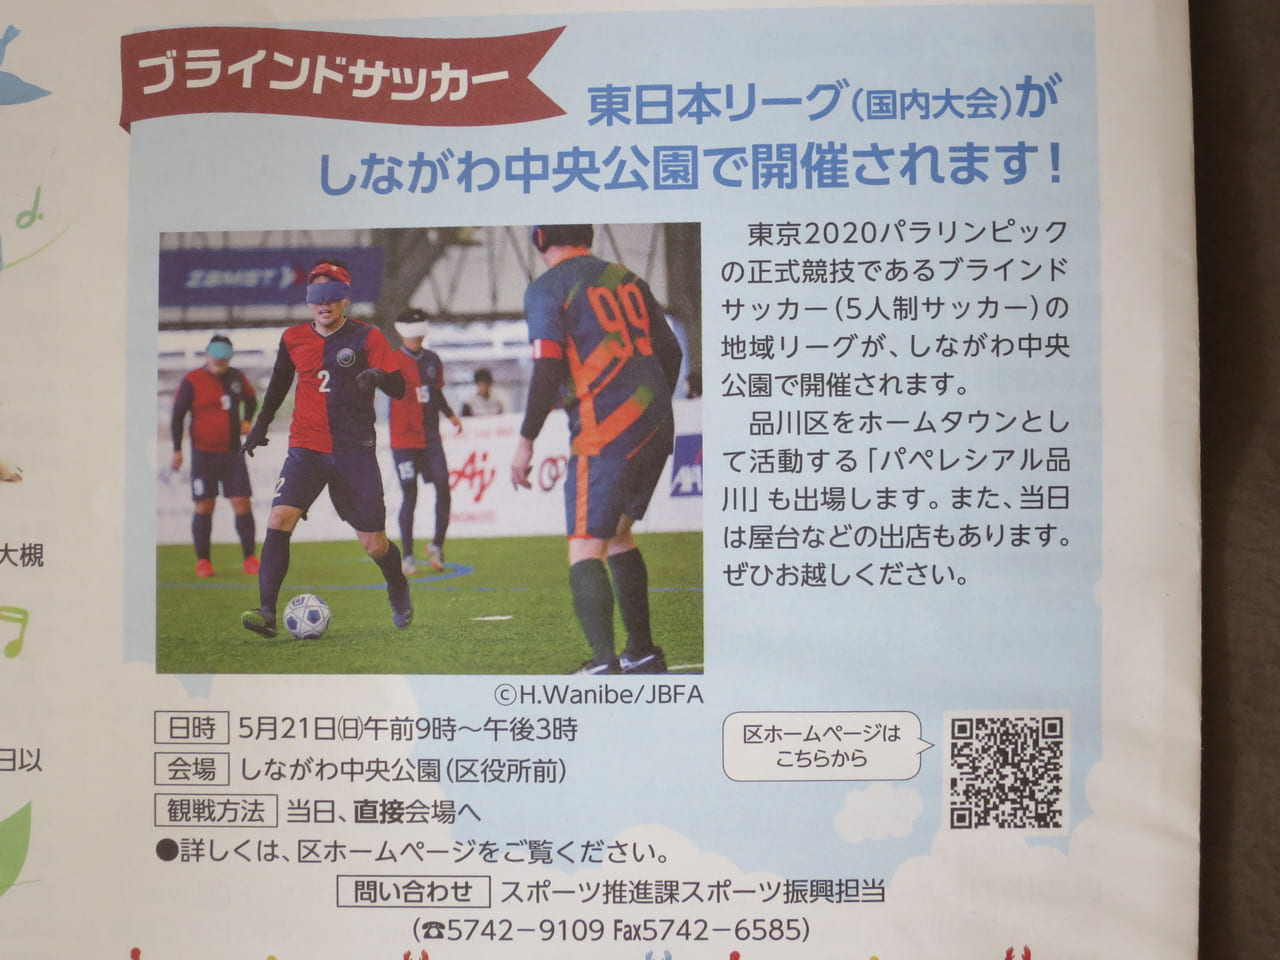 ブラインドサッカー東日本リーグ開催